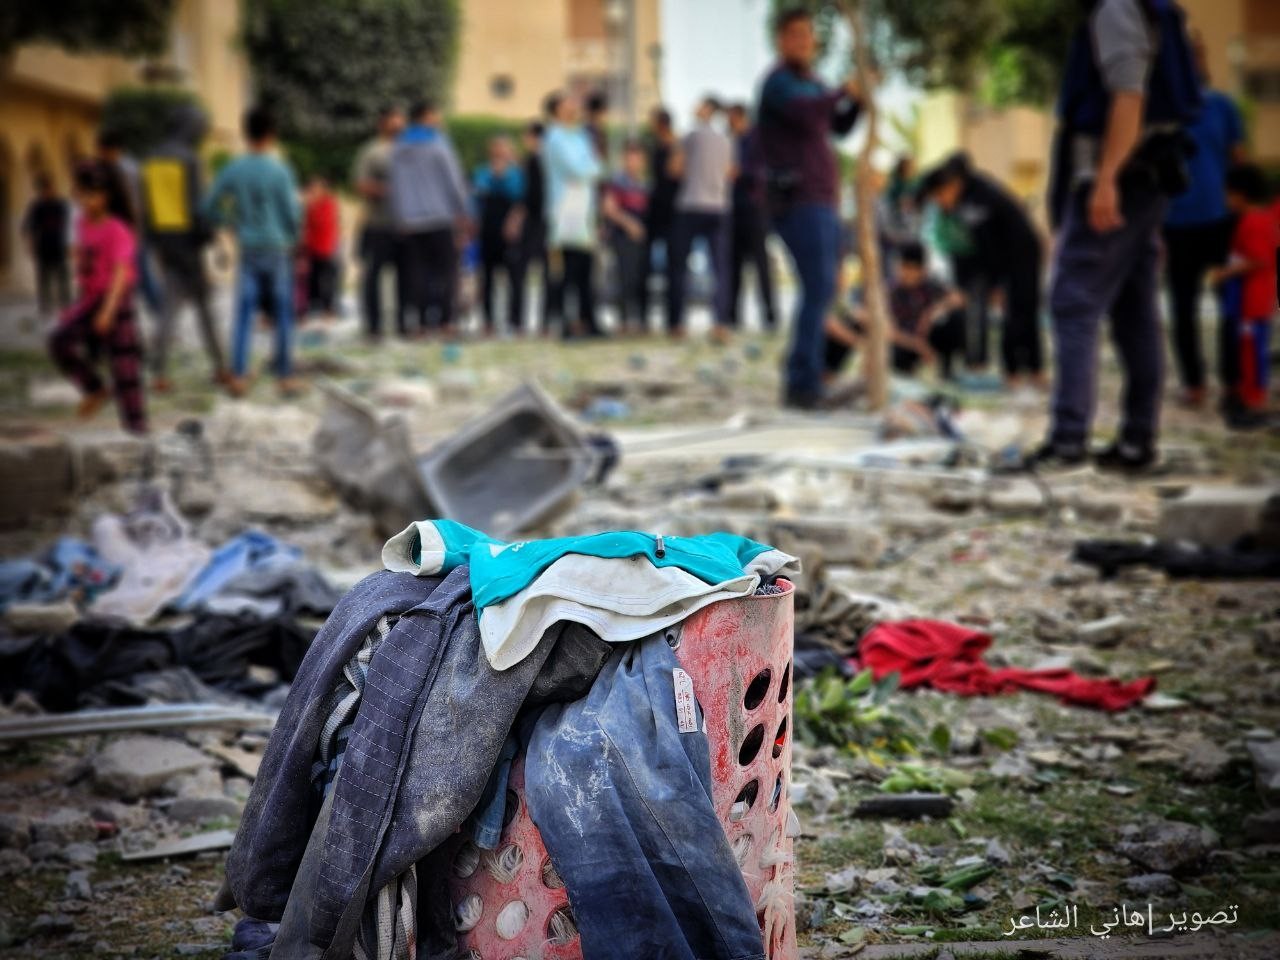 دمار كبير يخلفه القصف الإسرائيلي على شقة سكنية في مدينة حمد القطرية بخانيونس.jpg